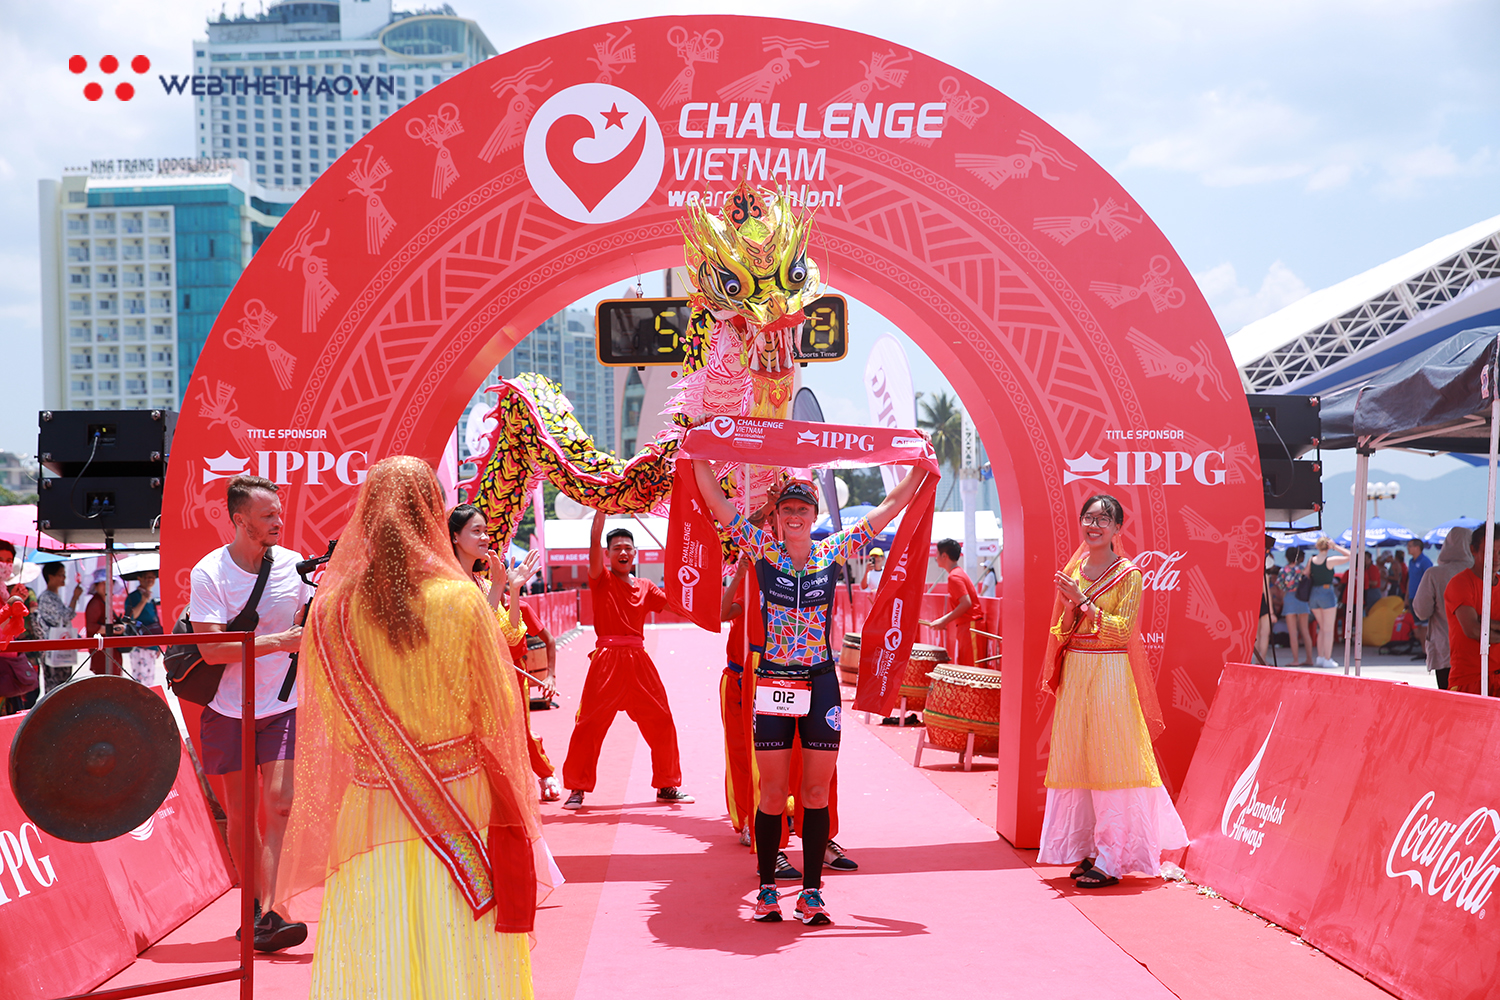 Khoảnh khắc tuyệt đẹp khiến Challenge Vietnam 2019 được nhớ mãi